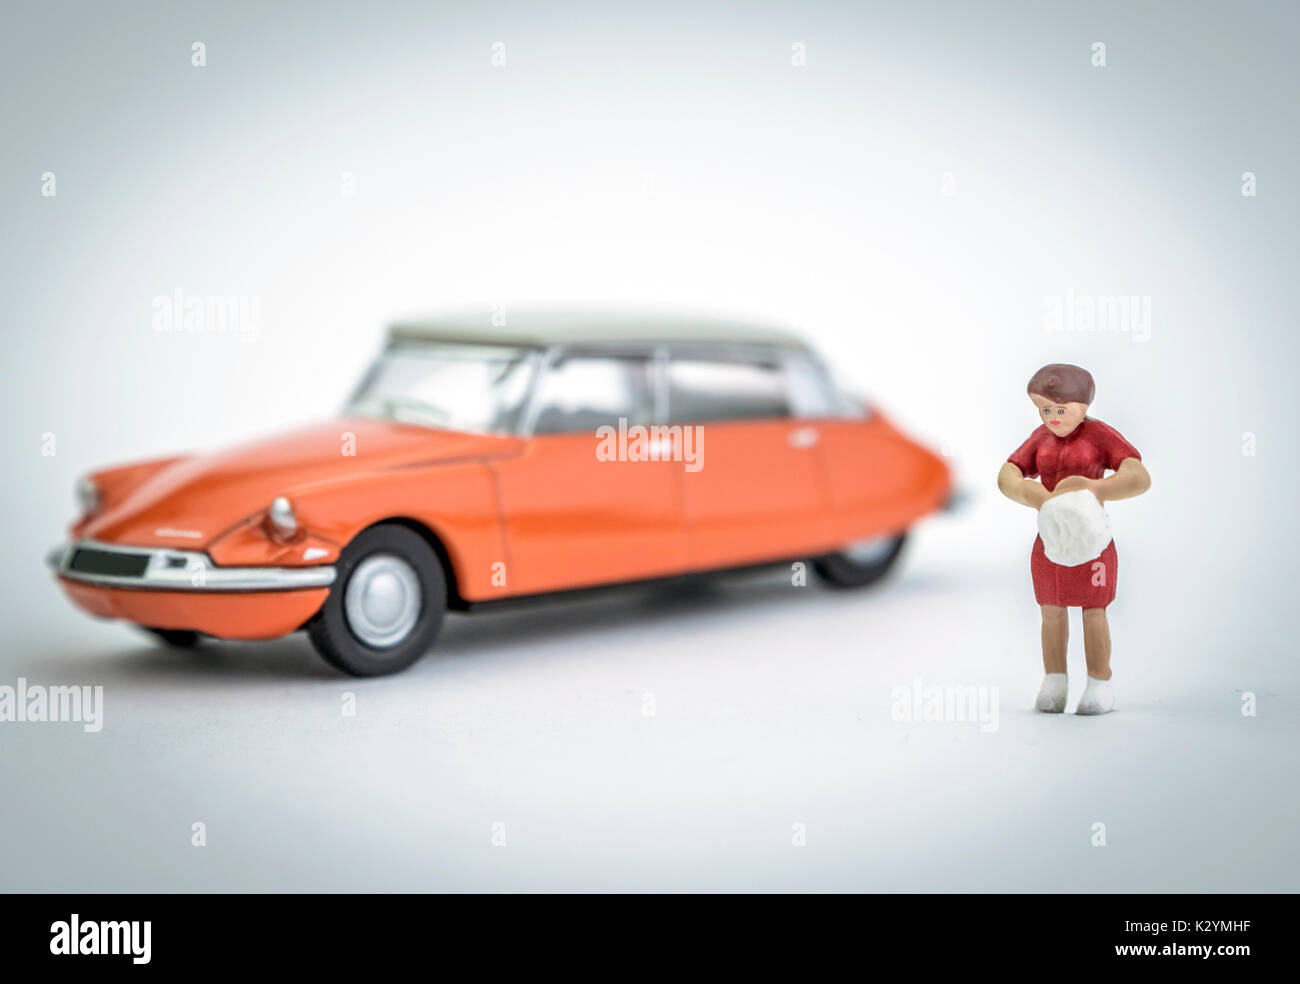 La figure d'une femme miniature vient de garé sa voiture orange vintage Banque D'Images